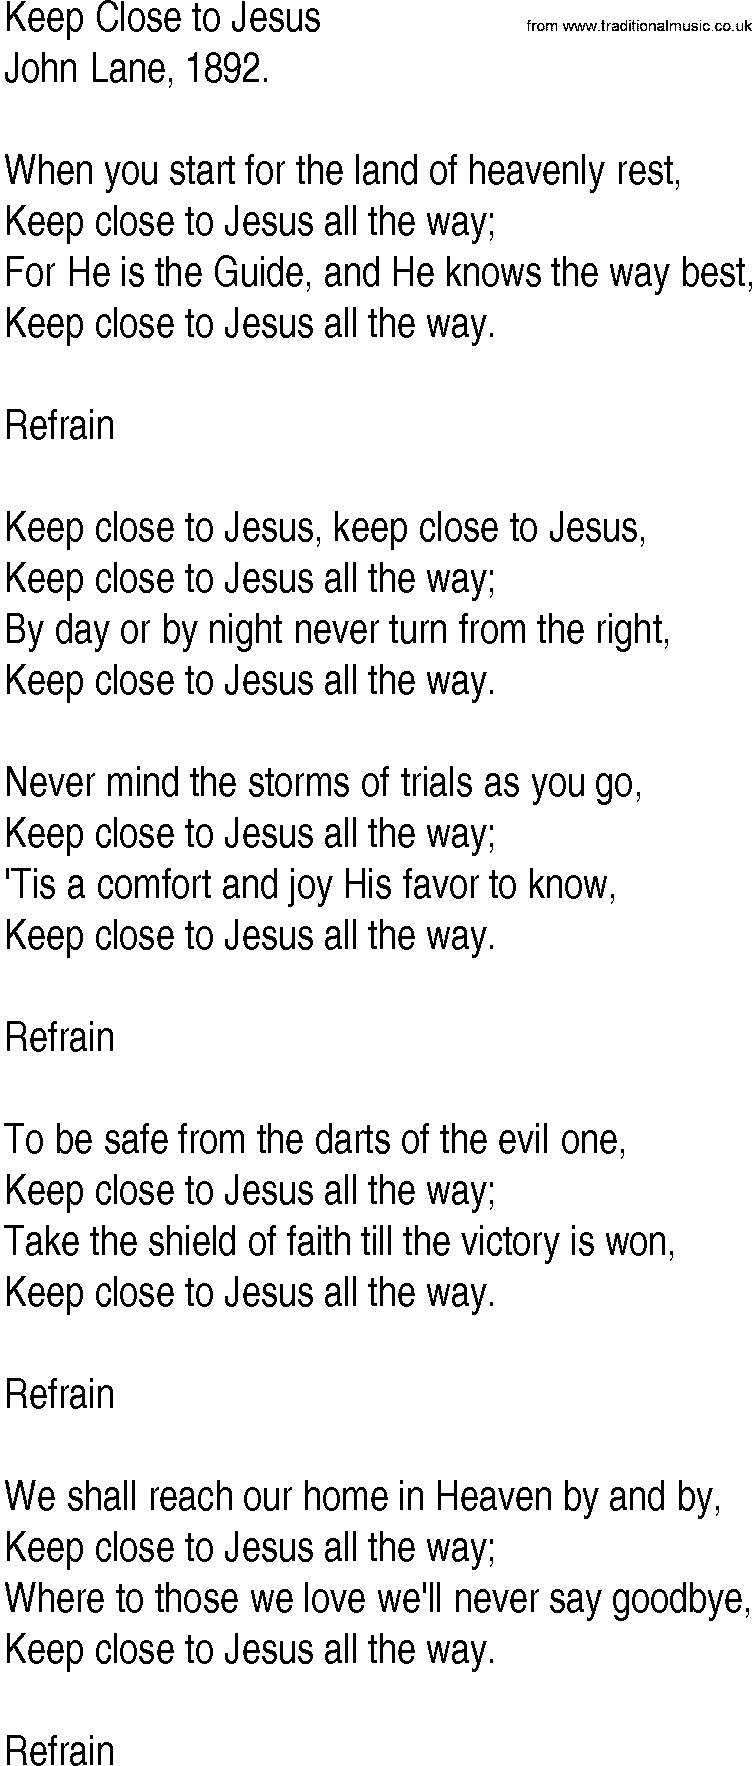 Hymn and Gospel Song: Keep Close to Jesus by John Lane lyrics